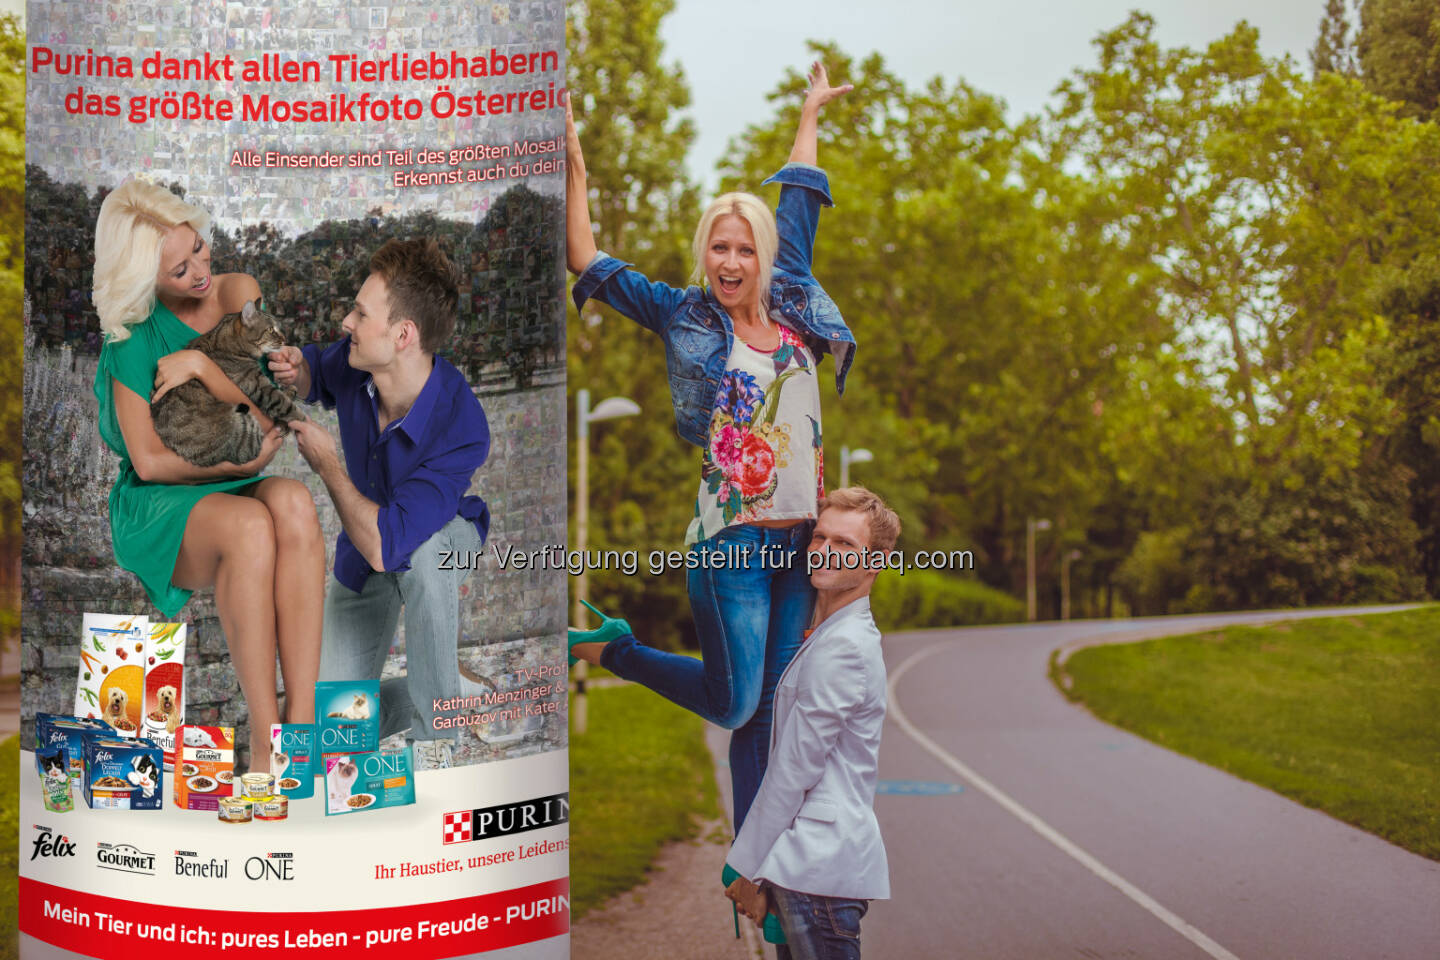 TV Profitänzer und Tierliebhaber Vadim Garbuzov und Kathrin Menzinger präsentieren die erste Litfaßsäule mit einem Teil des größten Mosaikfotos Österreichs - Rekord: 3.000 Hunde- und Katzenfotos auf Purinas Litfaßsäulen